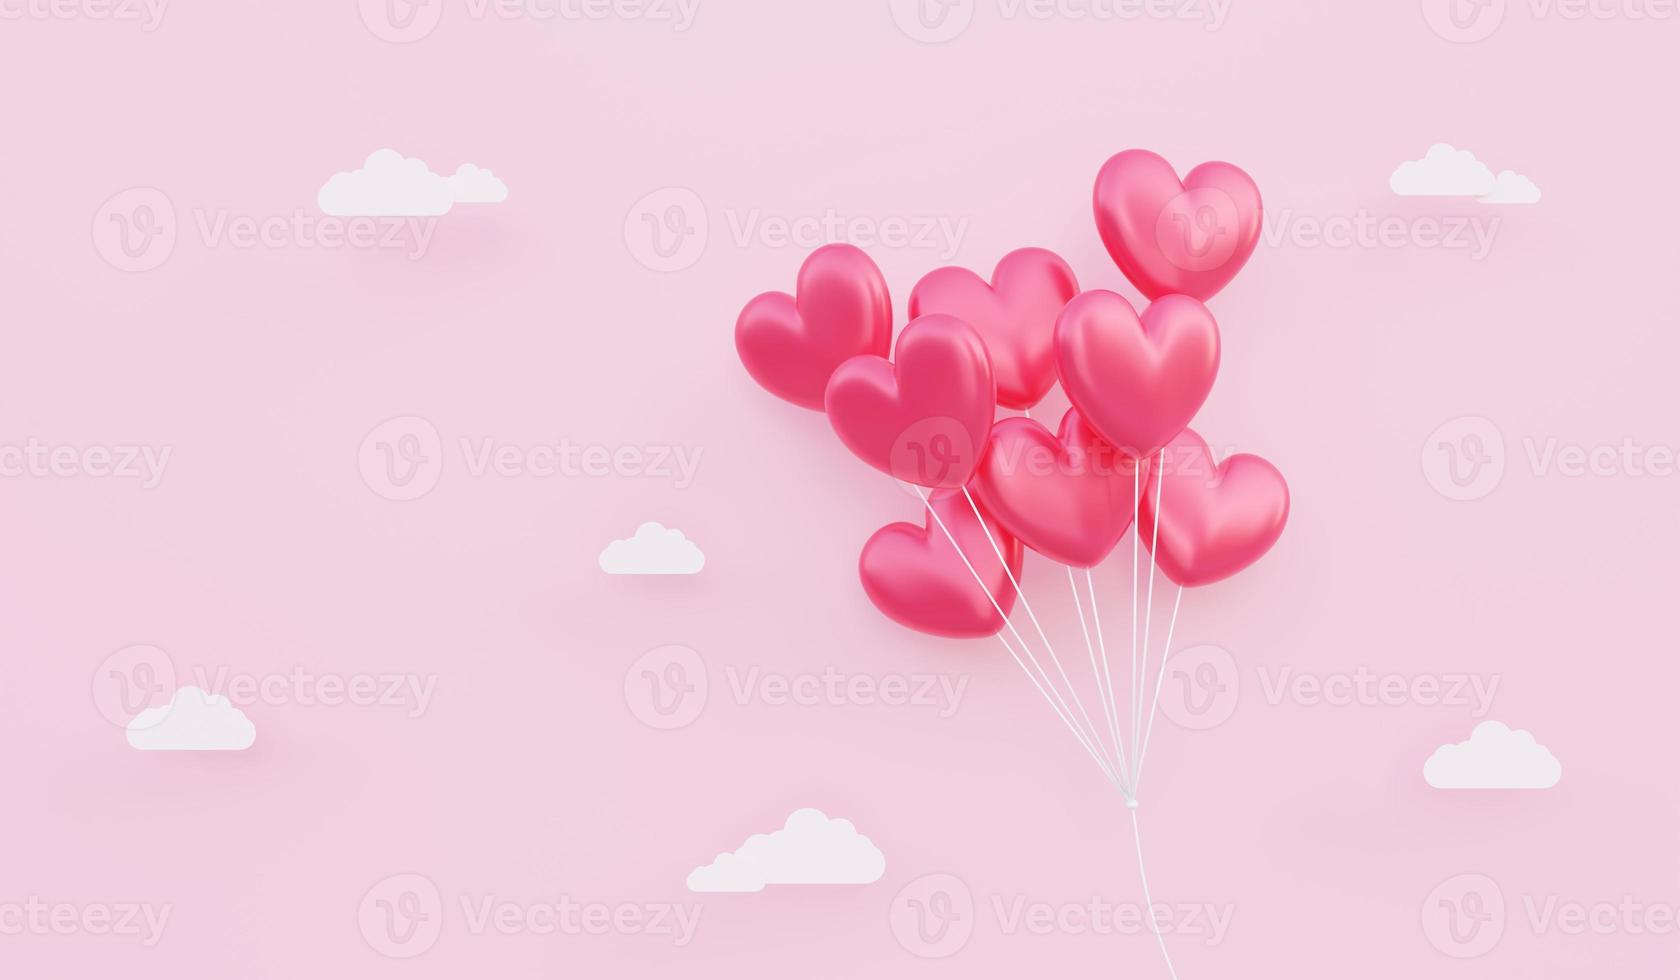 Valentinstag, Liebeskonzept Hintergrund, 3D-Darstellung des roten, herzförmigen Ballonstraußes, der in den Himmel schwebt foto